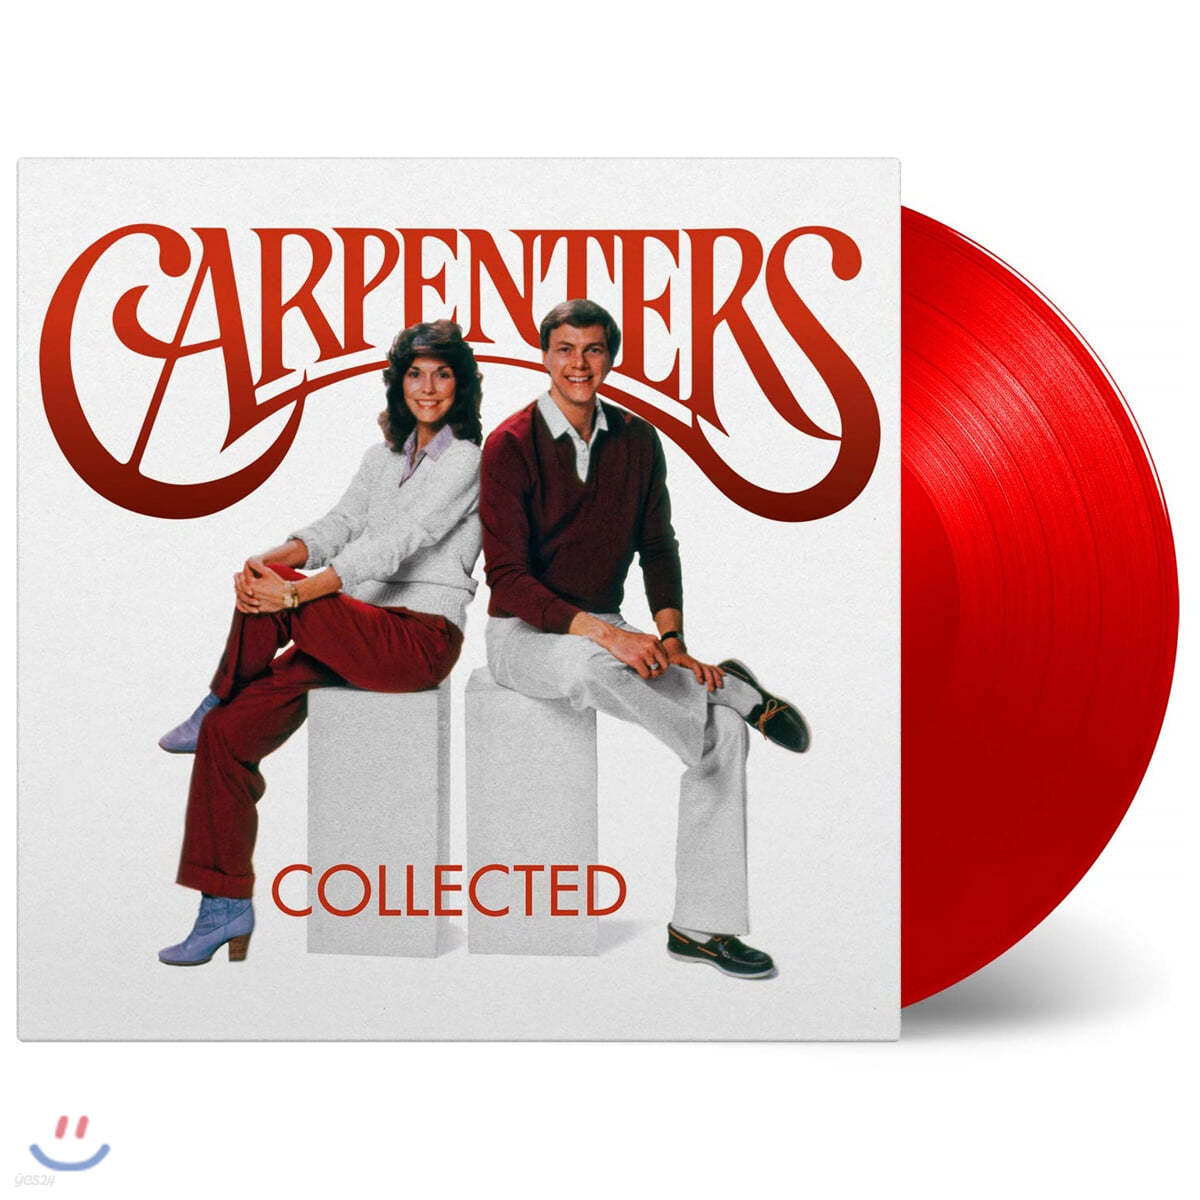 Carpenters (카펜터스) - Collected [레드 컬러 2LP]